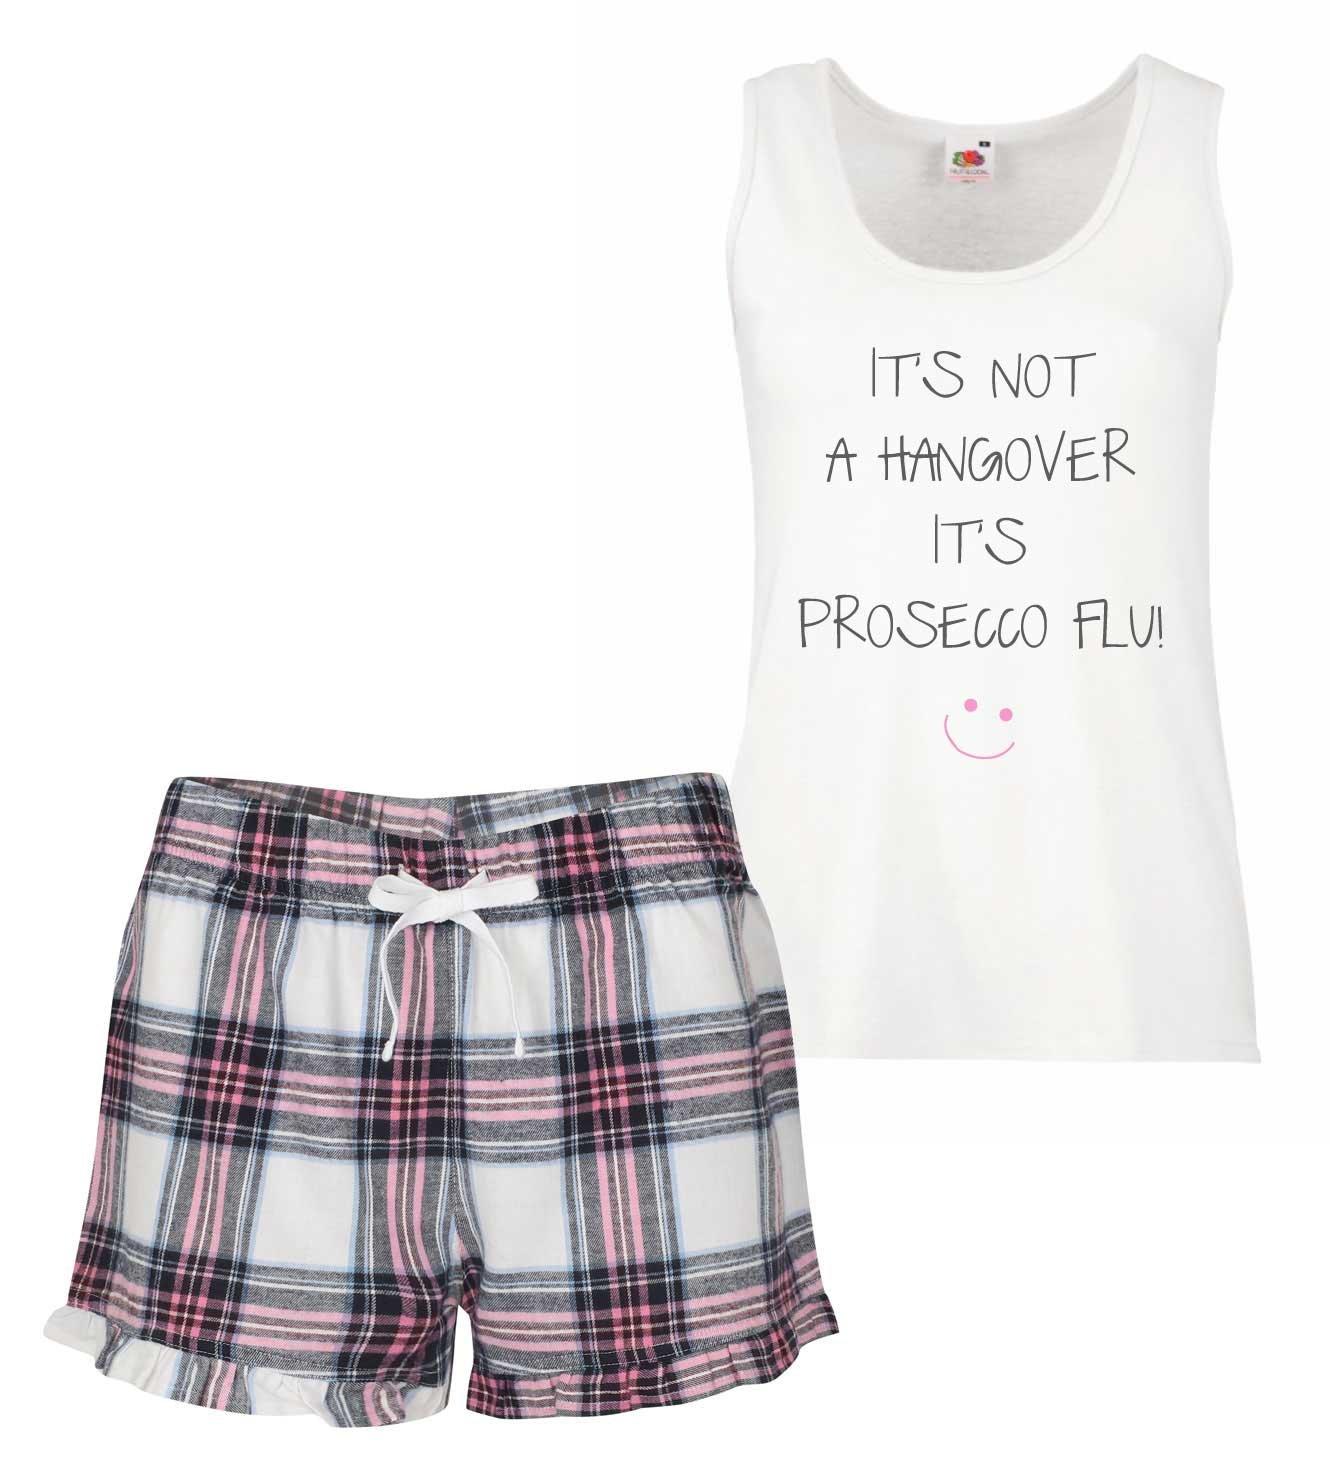 It's Not A Hangover It's Prosecco Flu PJ's Loungewear Lounge Wear Pink Tartan Frill Shorts